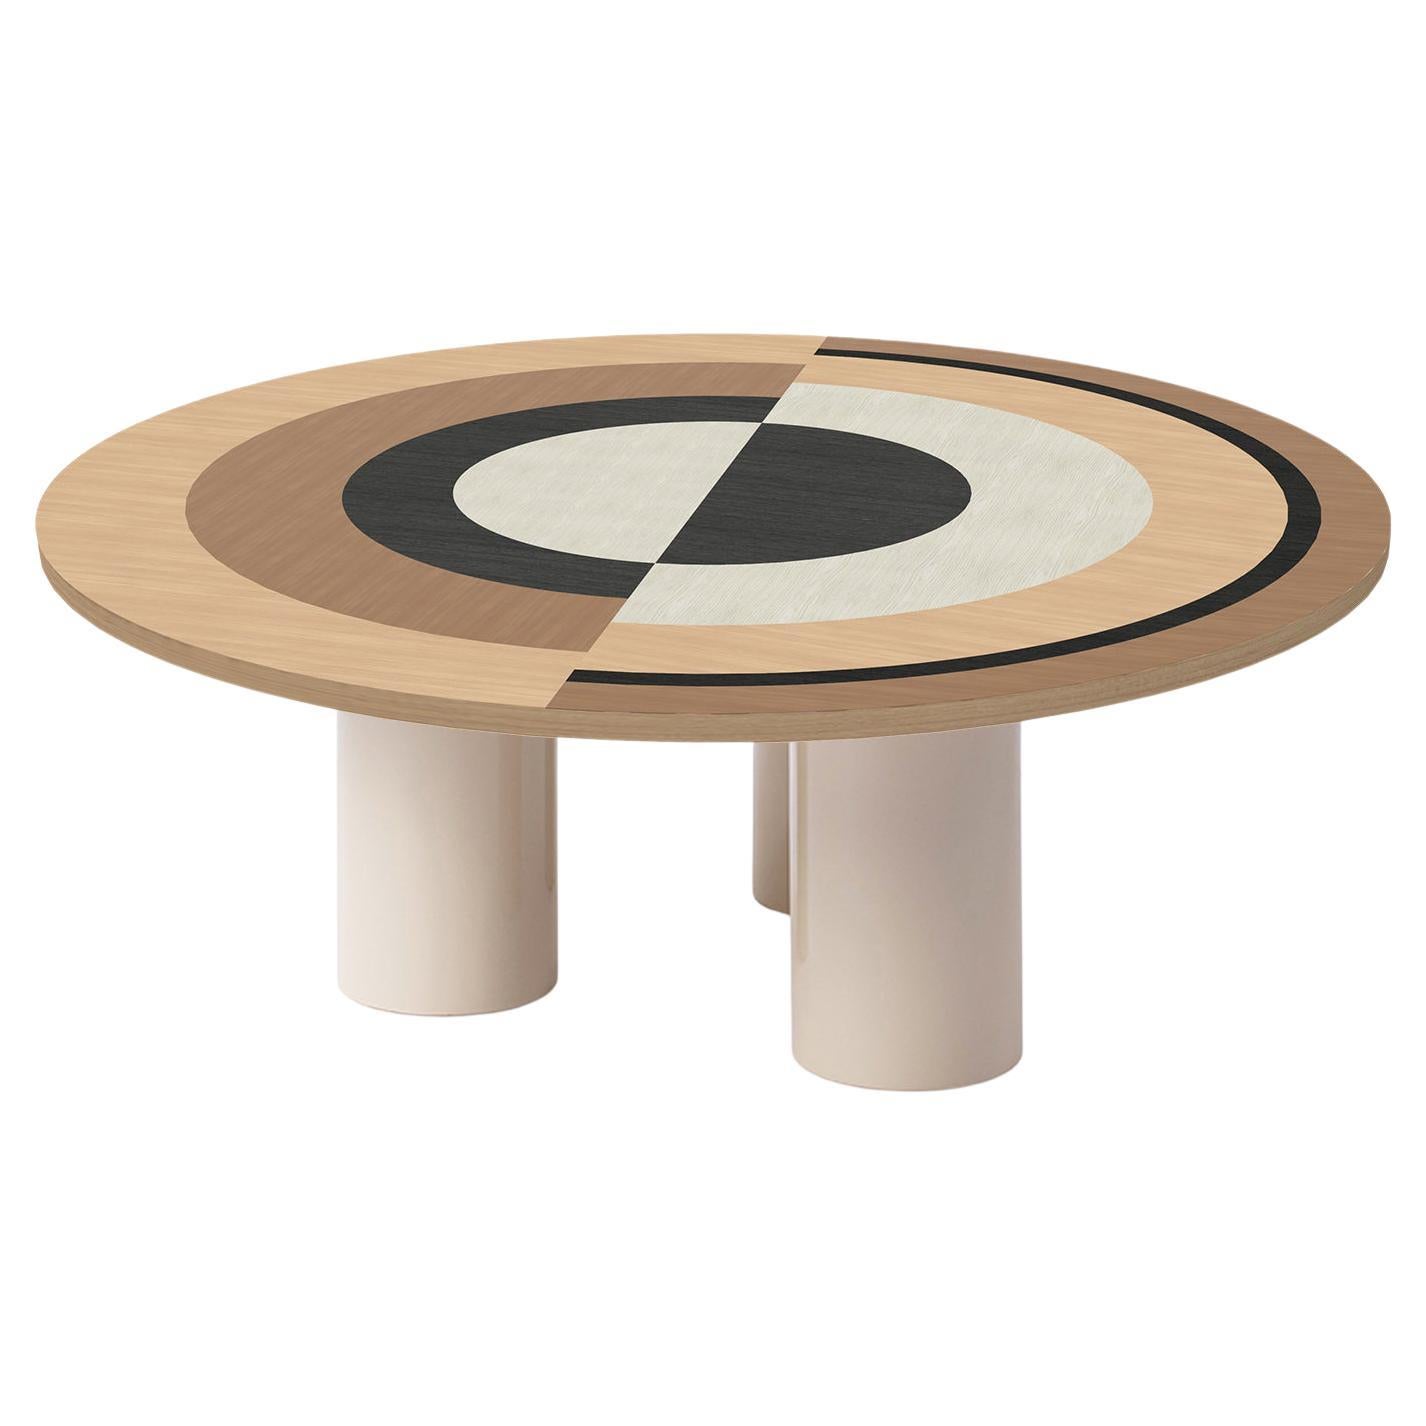 Sonia et Caetera Coffee Table M1 Designed by Thomas Dariel